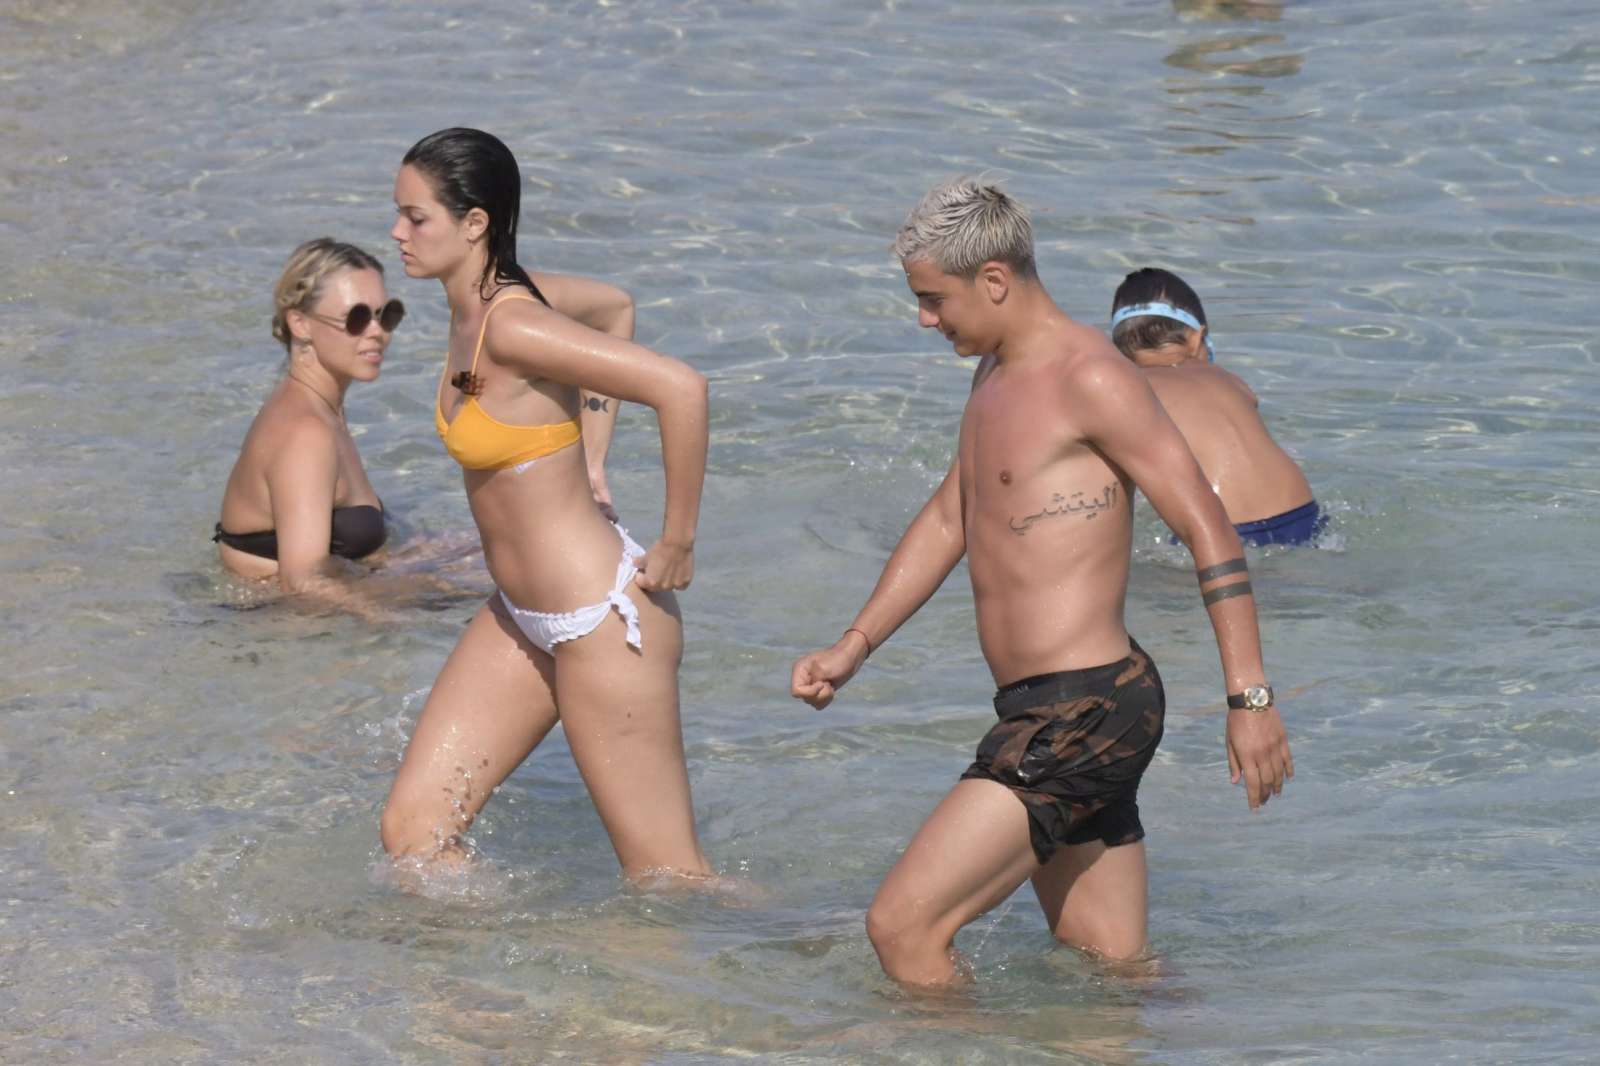 Oriana Sabatini in Bikini at the beach in Mykonos July 28, 2018 3